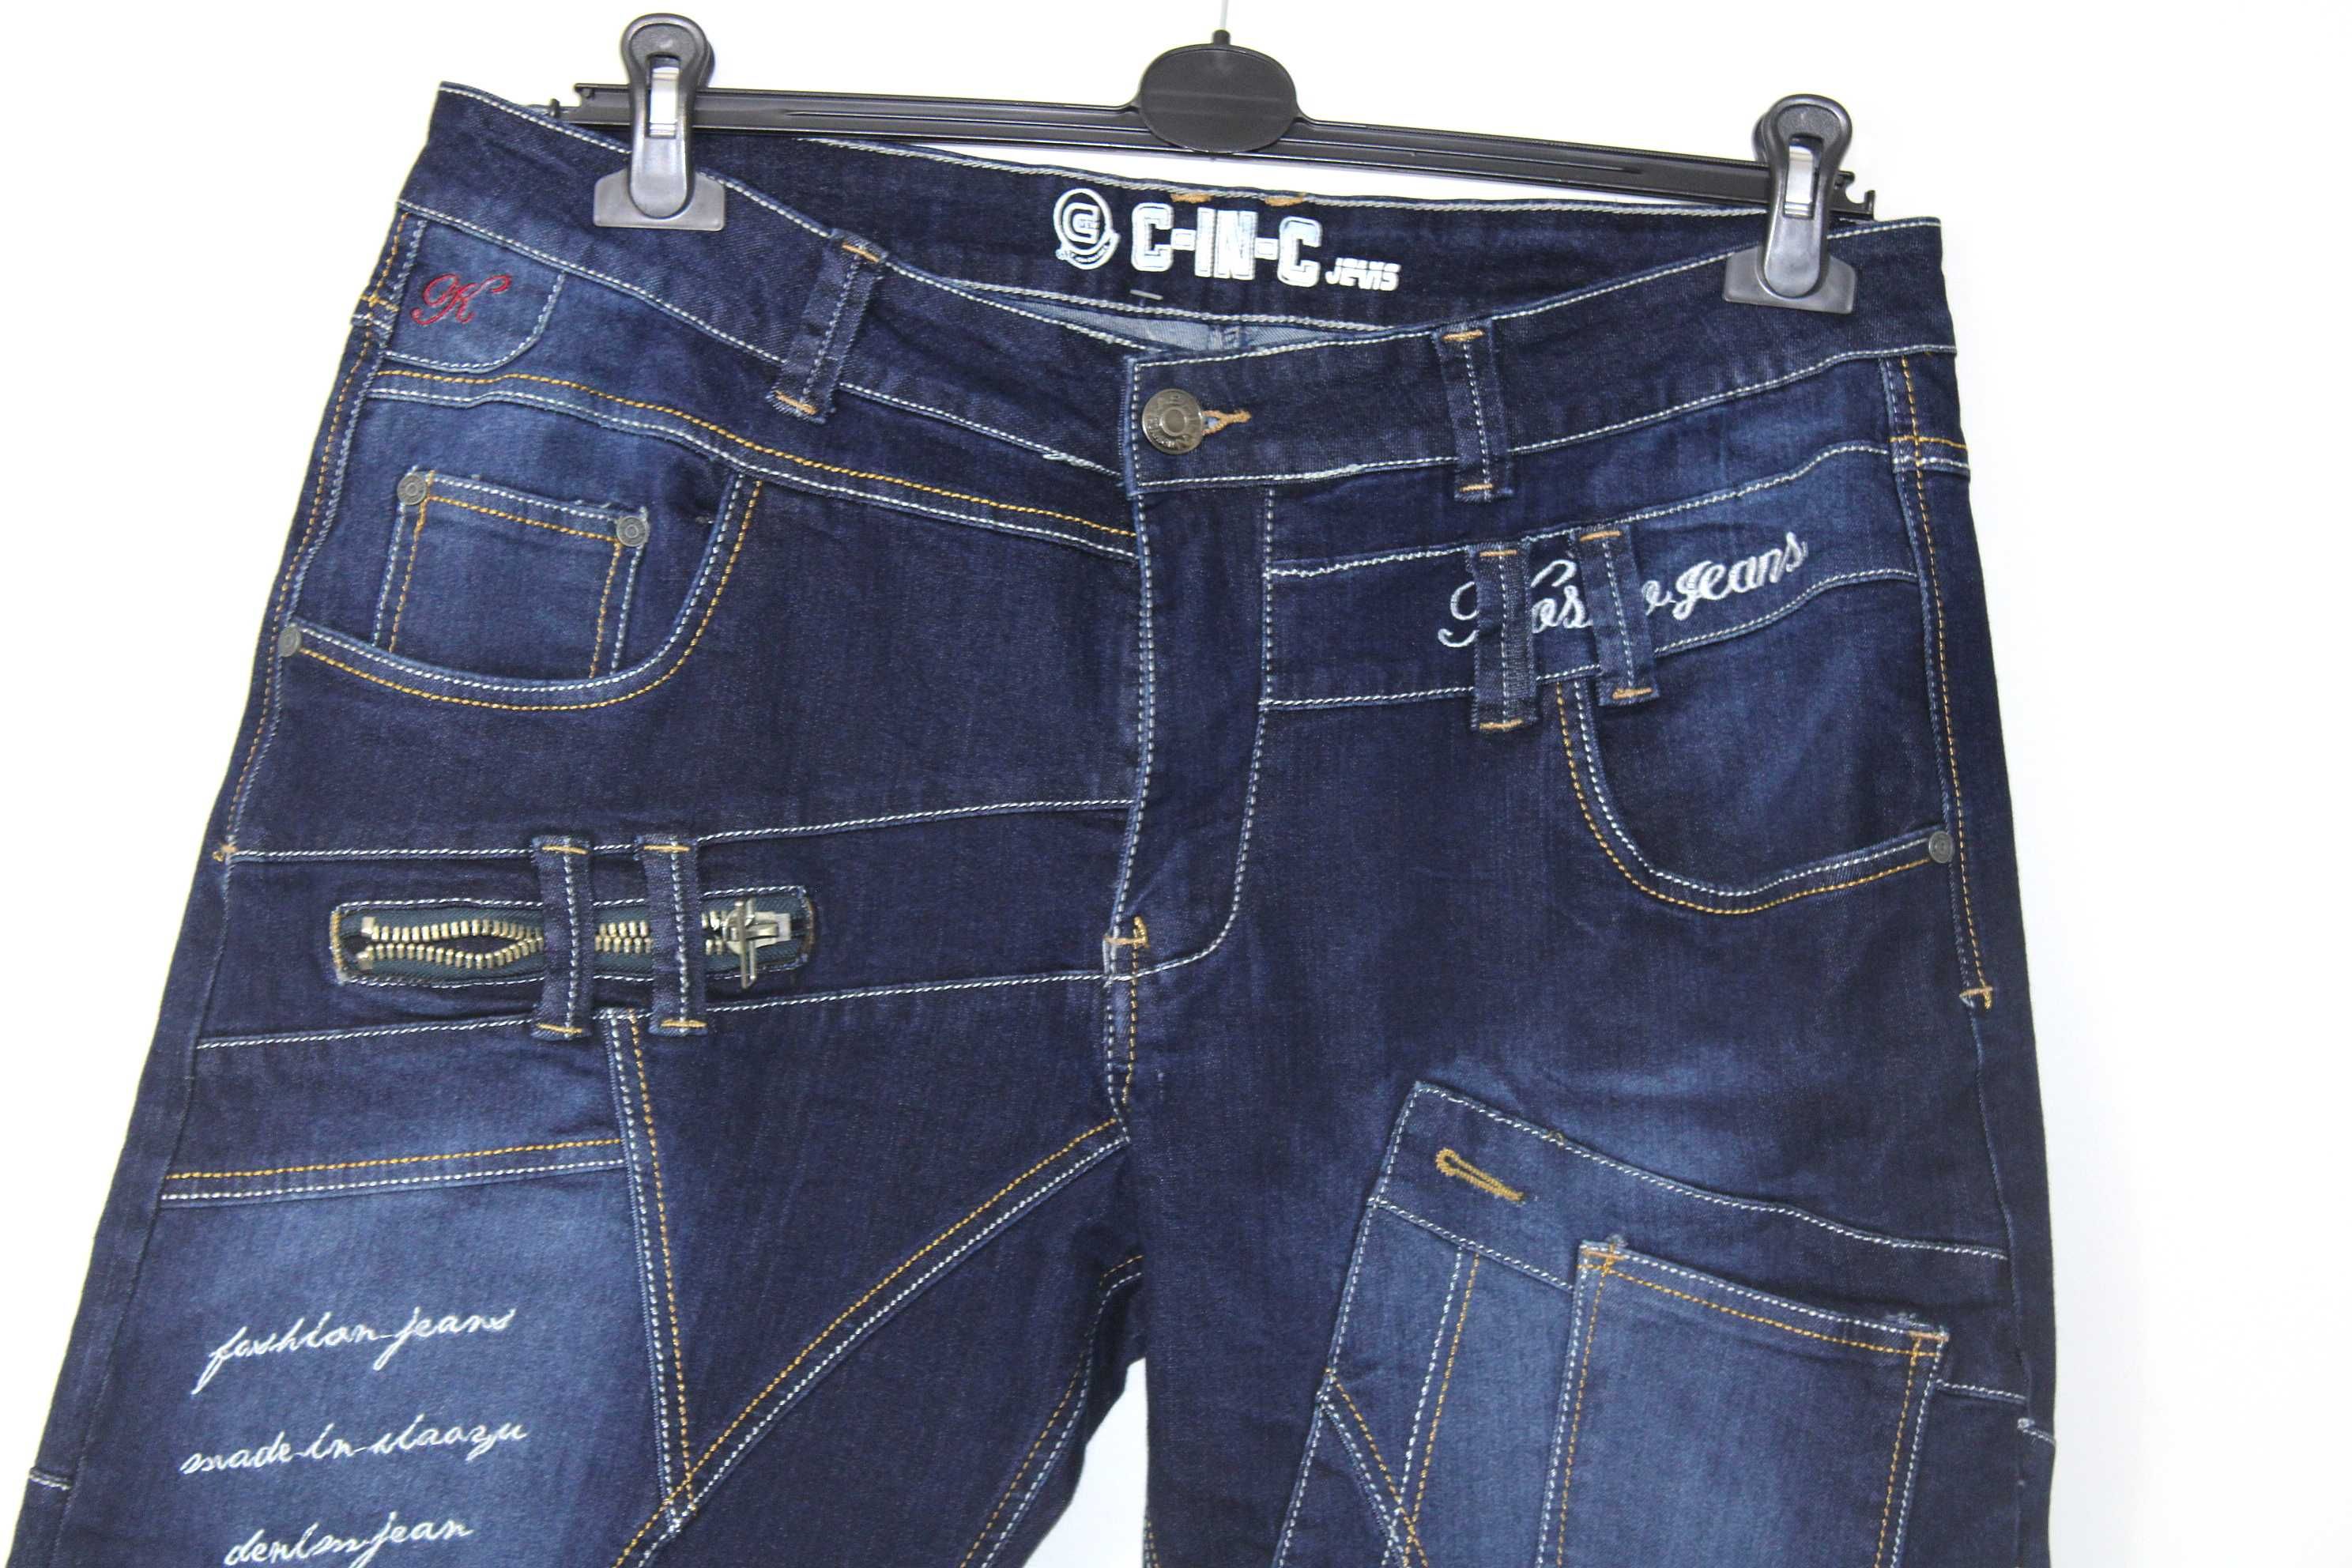 w7 C-IN-C Męskie Granatowe Proste Spodnie Jeans Naszywki XL